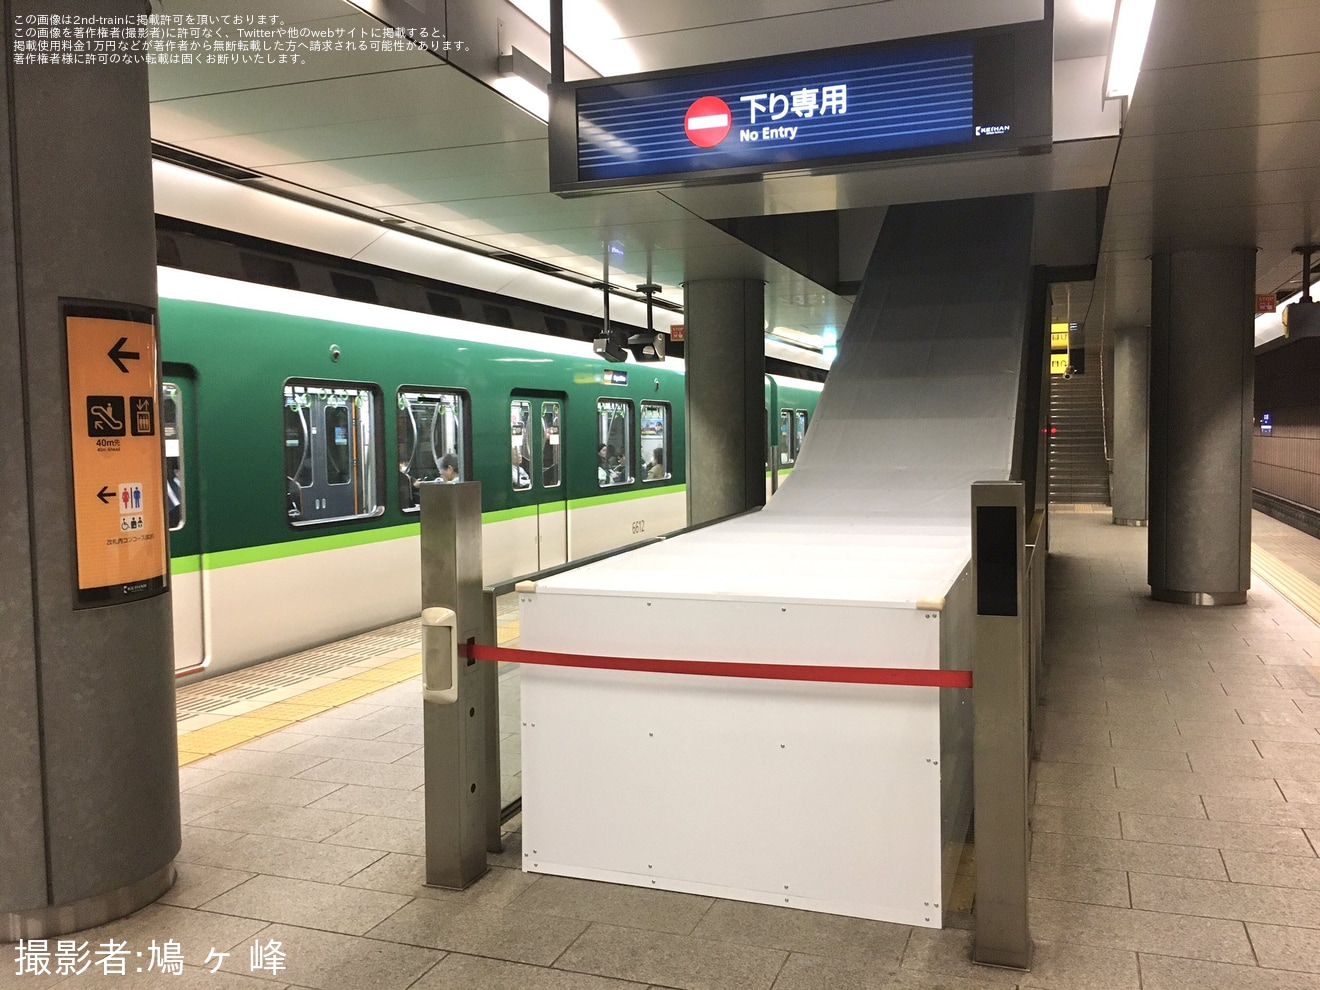 【京阪】なにわ橋駅の下りエスカレーターが使用終了の拡大写真